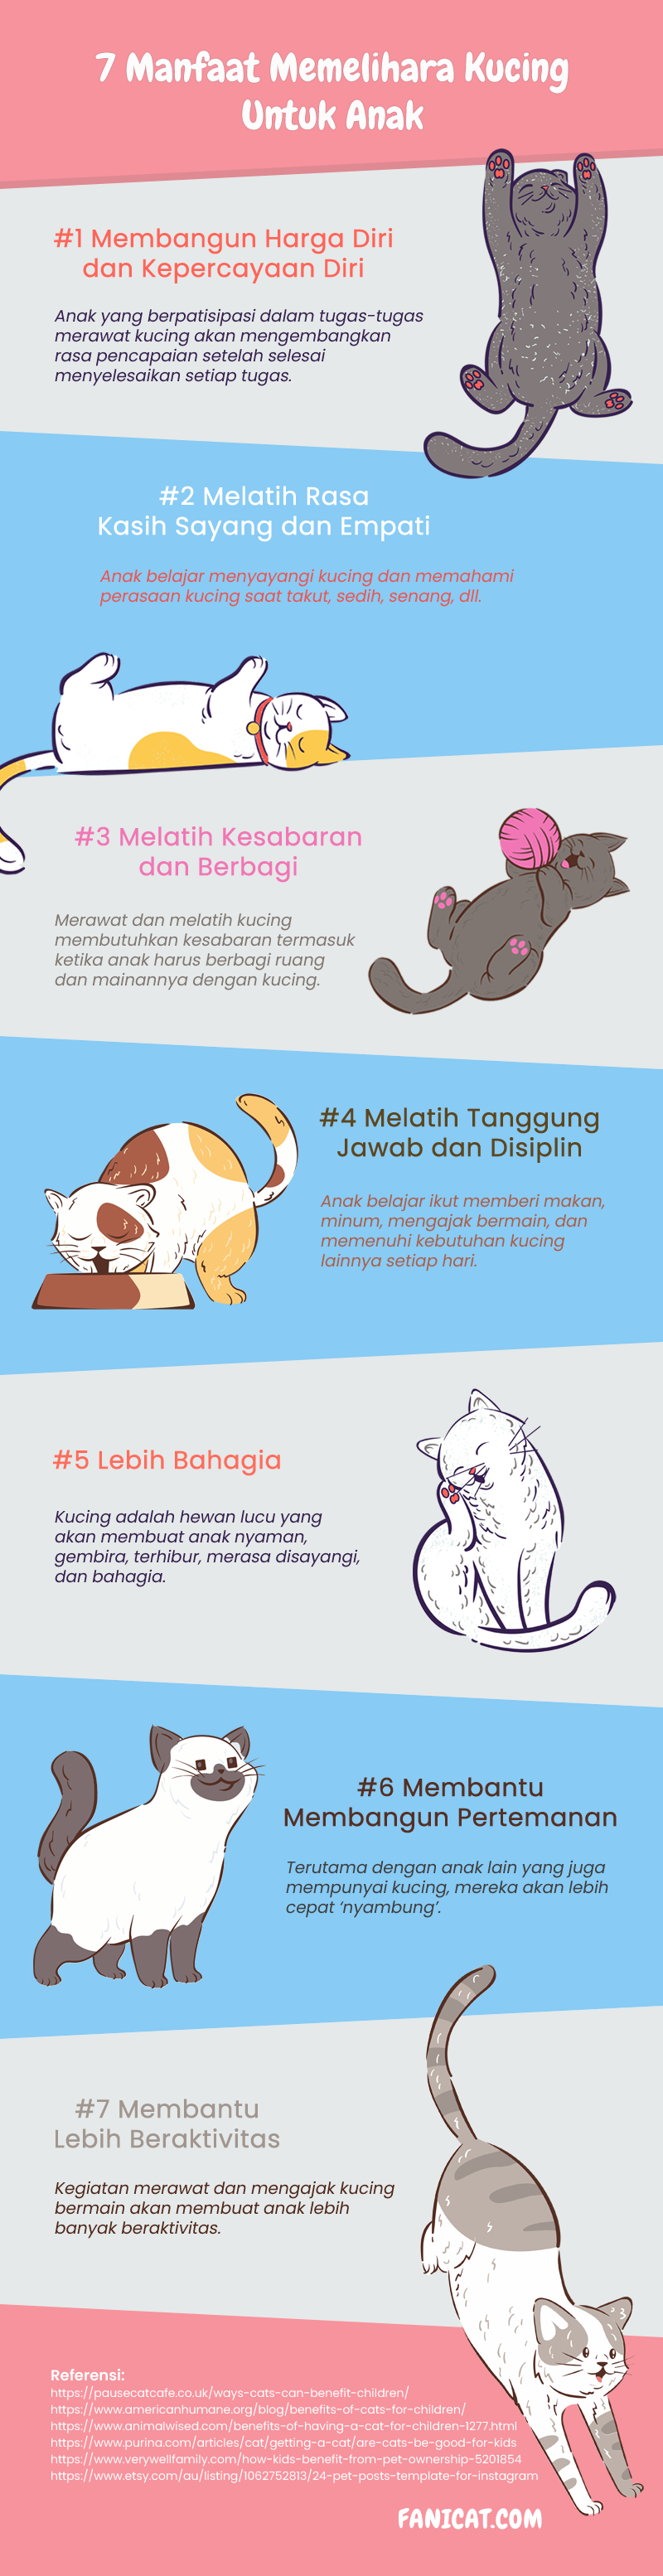 infografis manfaat memelihara kucing untuk anak